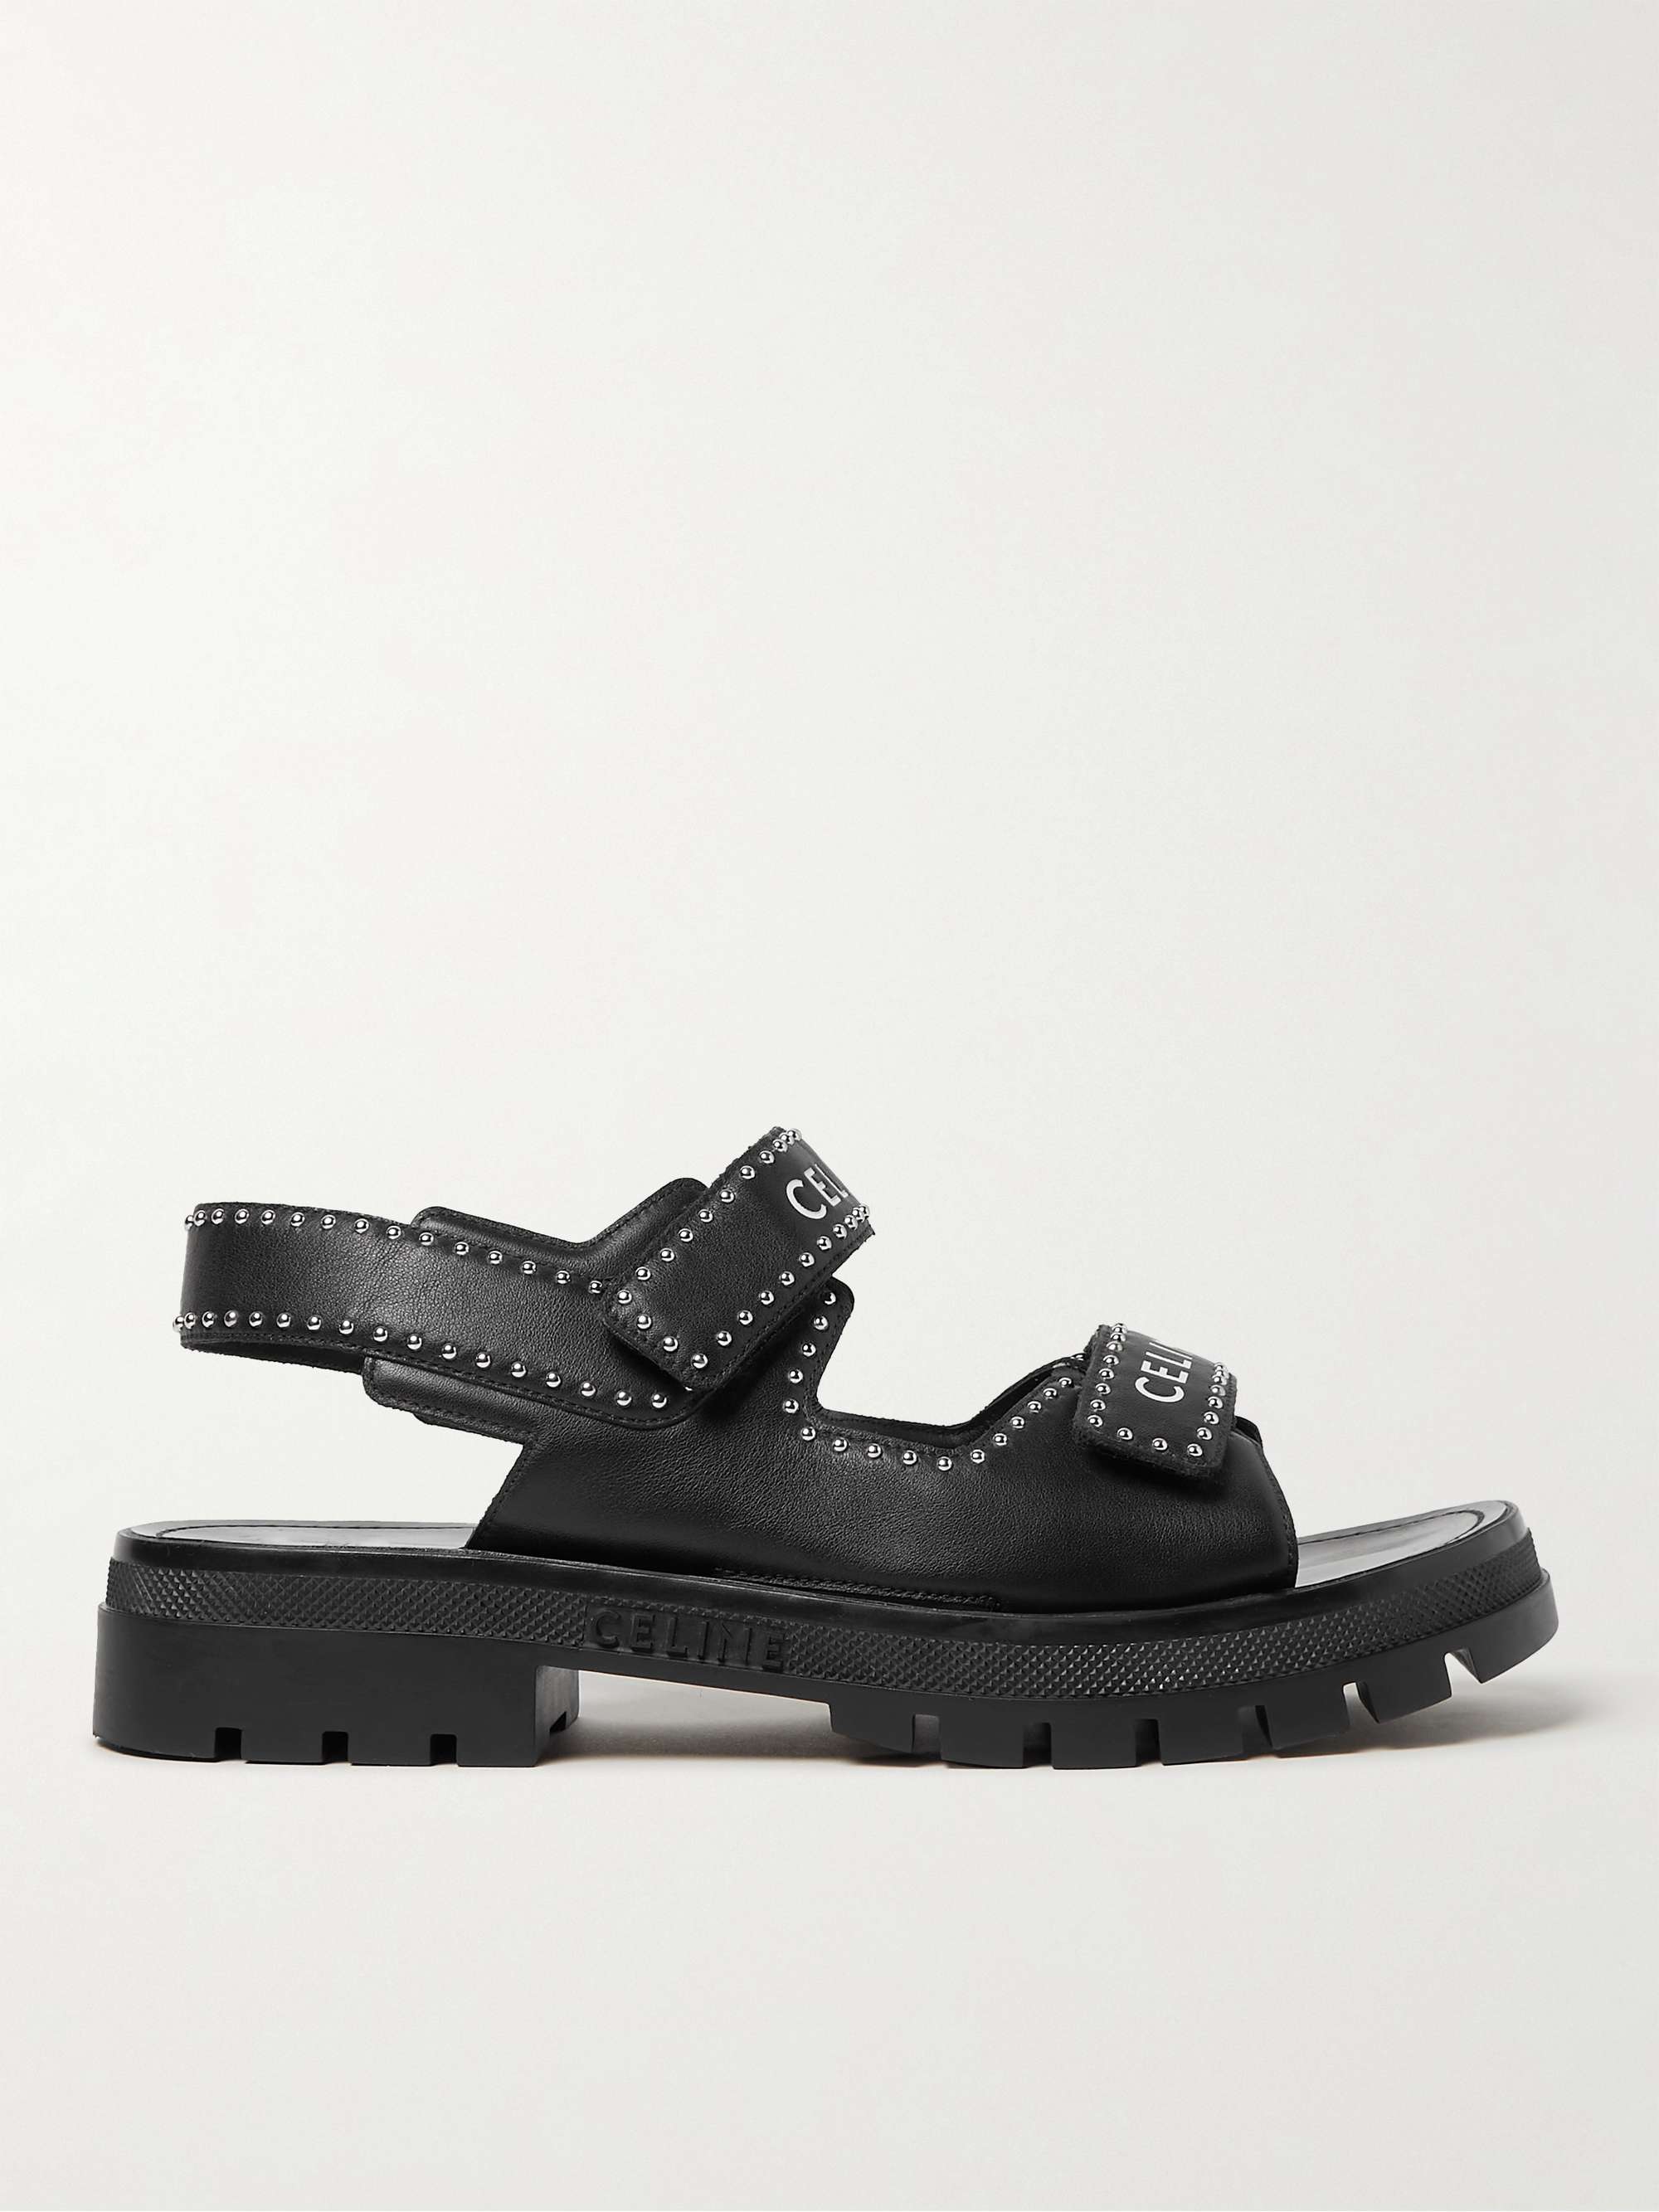 CELINE HOMME Studded Logo-Print Leather Sandals